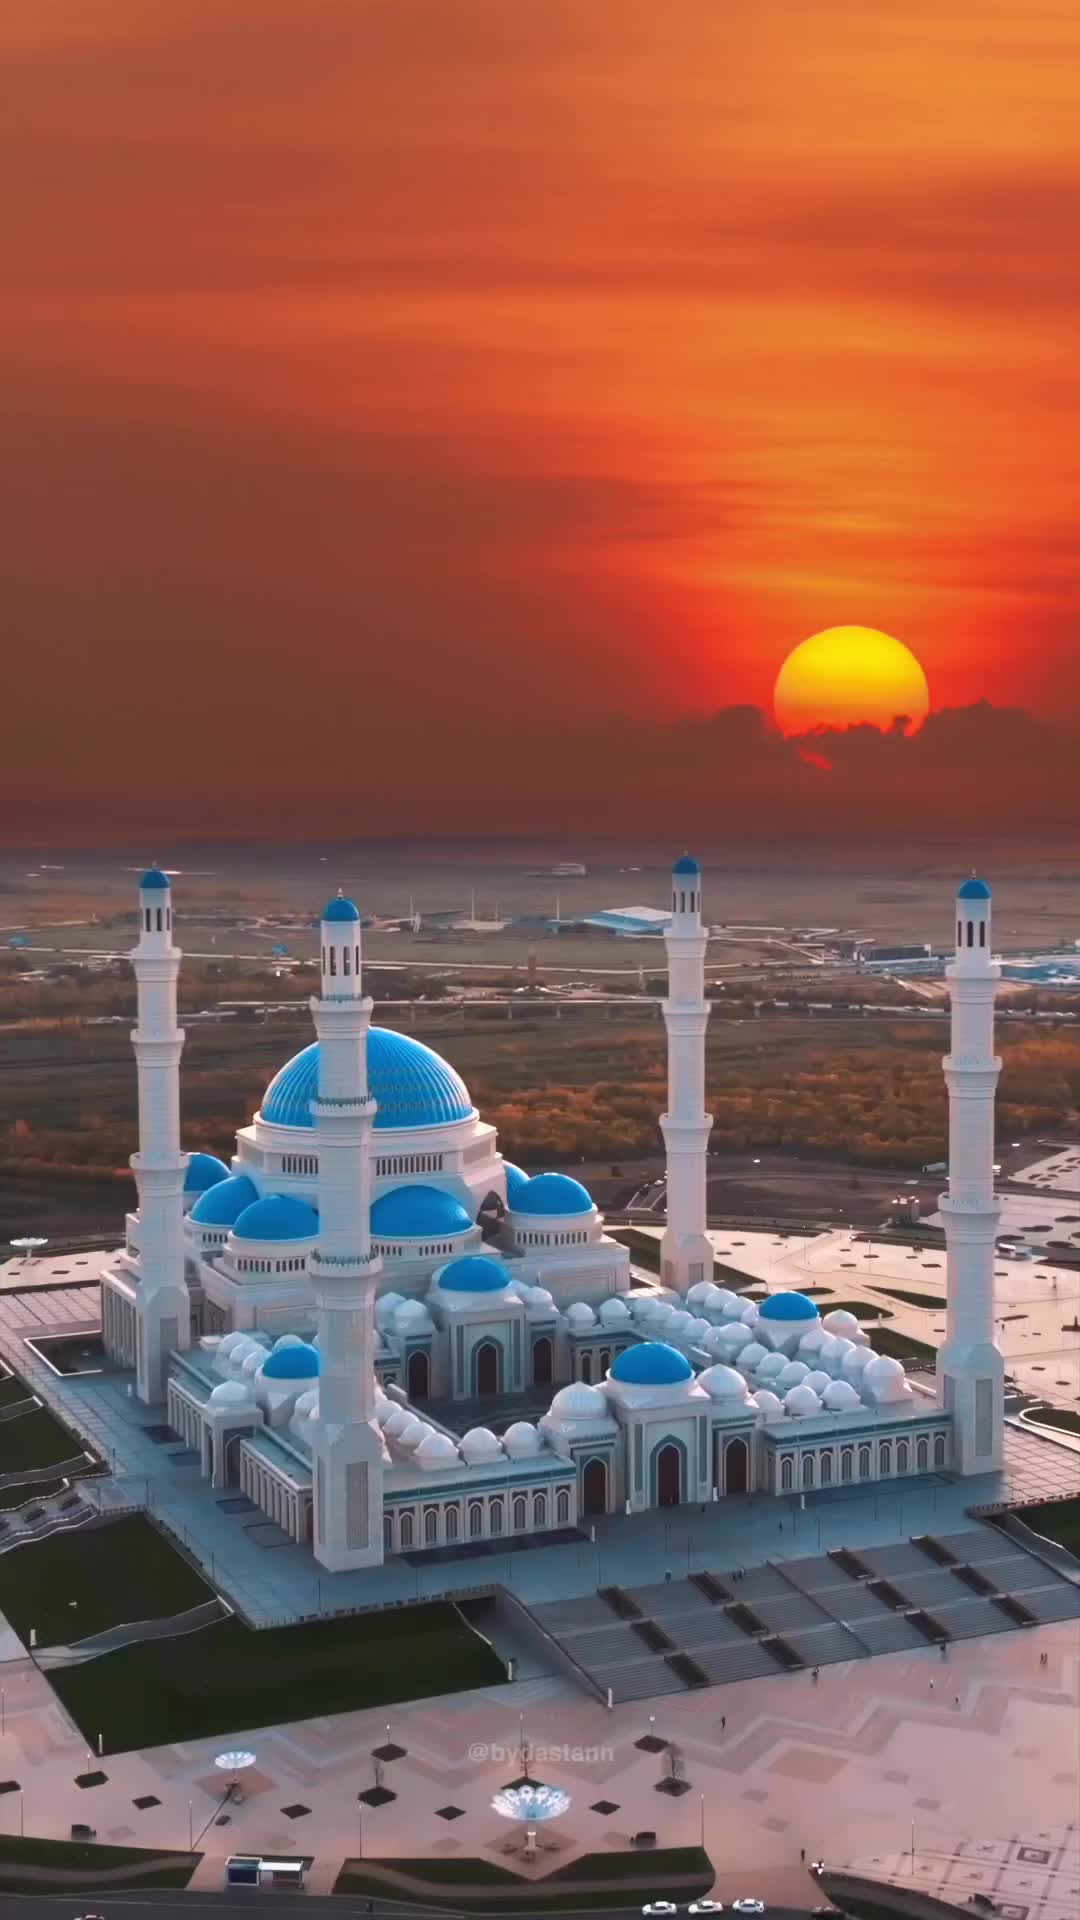 Astana Grand Mosque: Stunning Sunset View